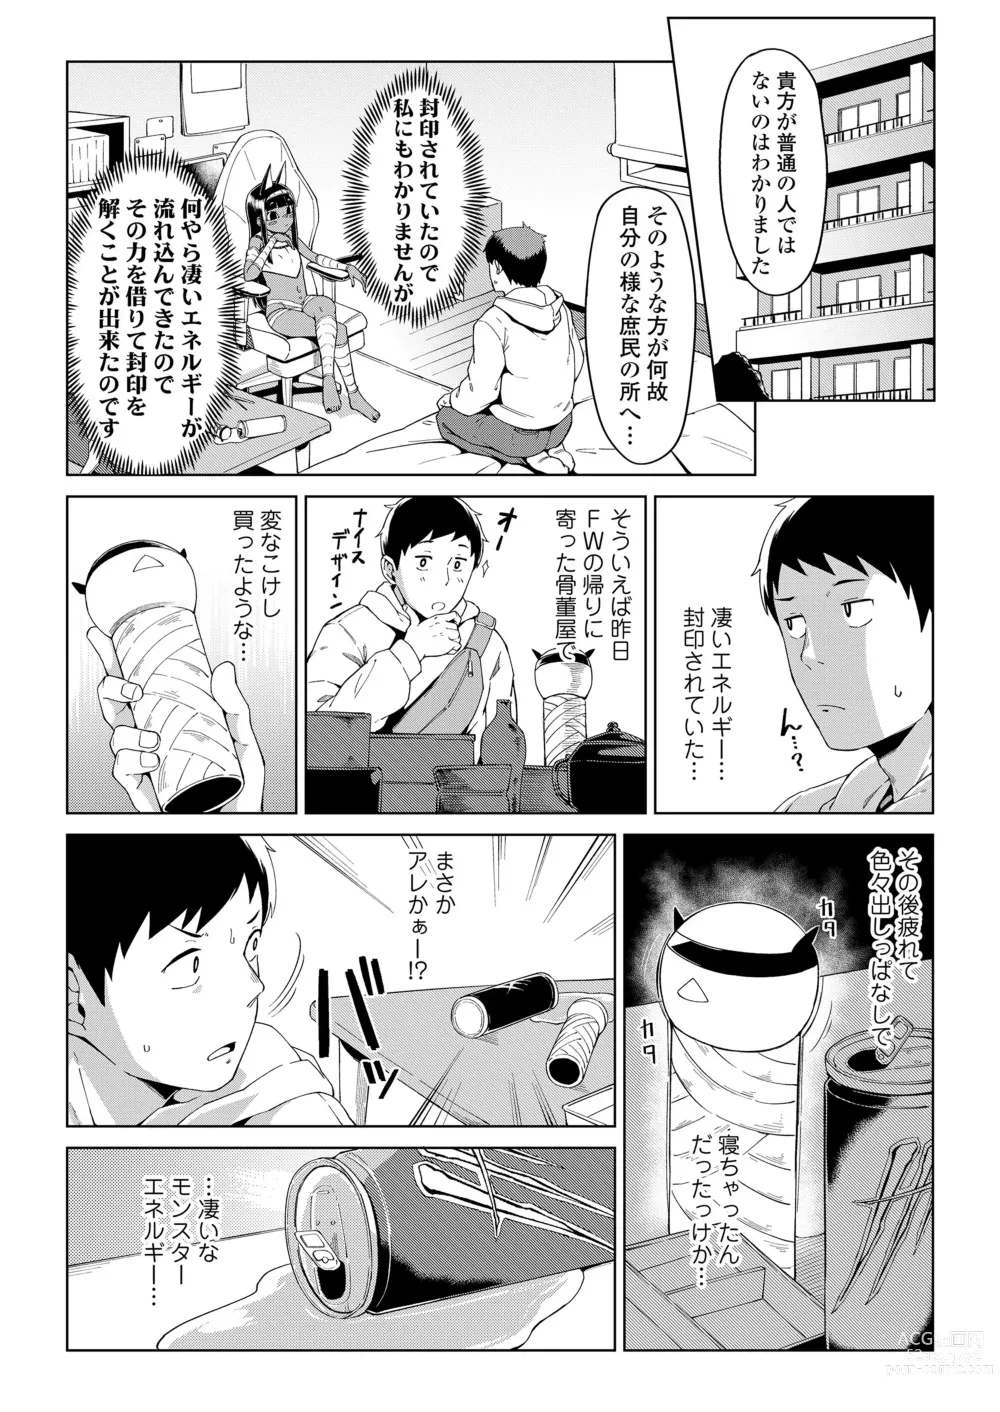 Page 5 of manga Towako Oboro Emaki 13